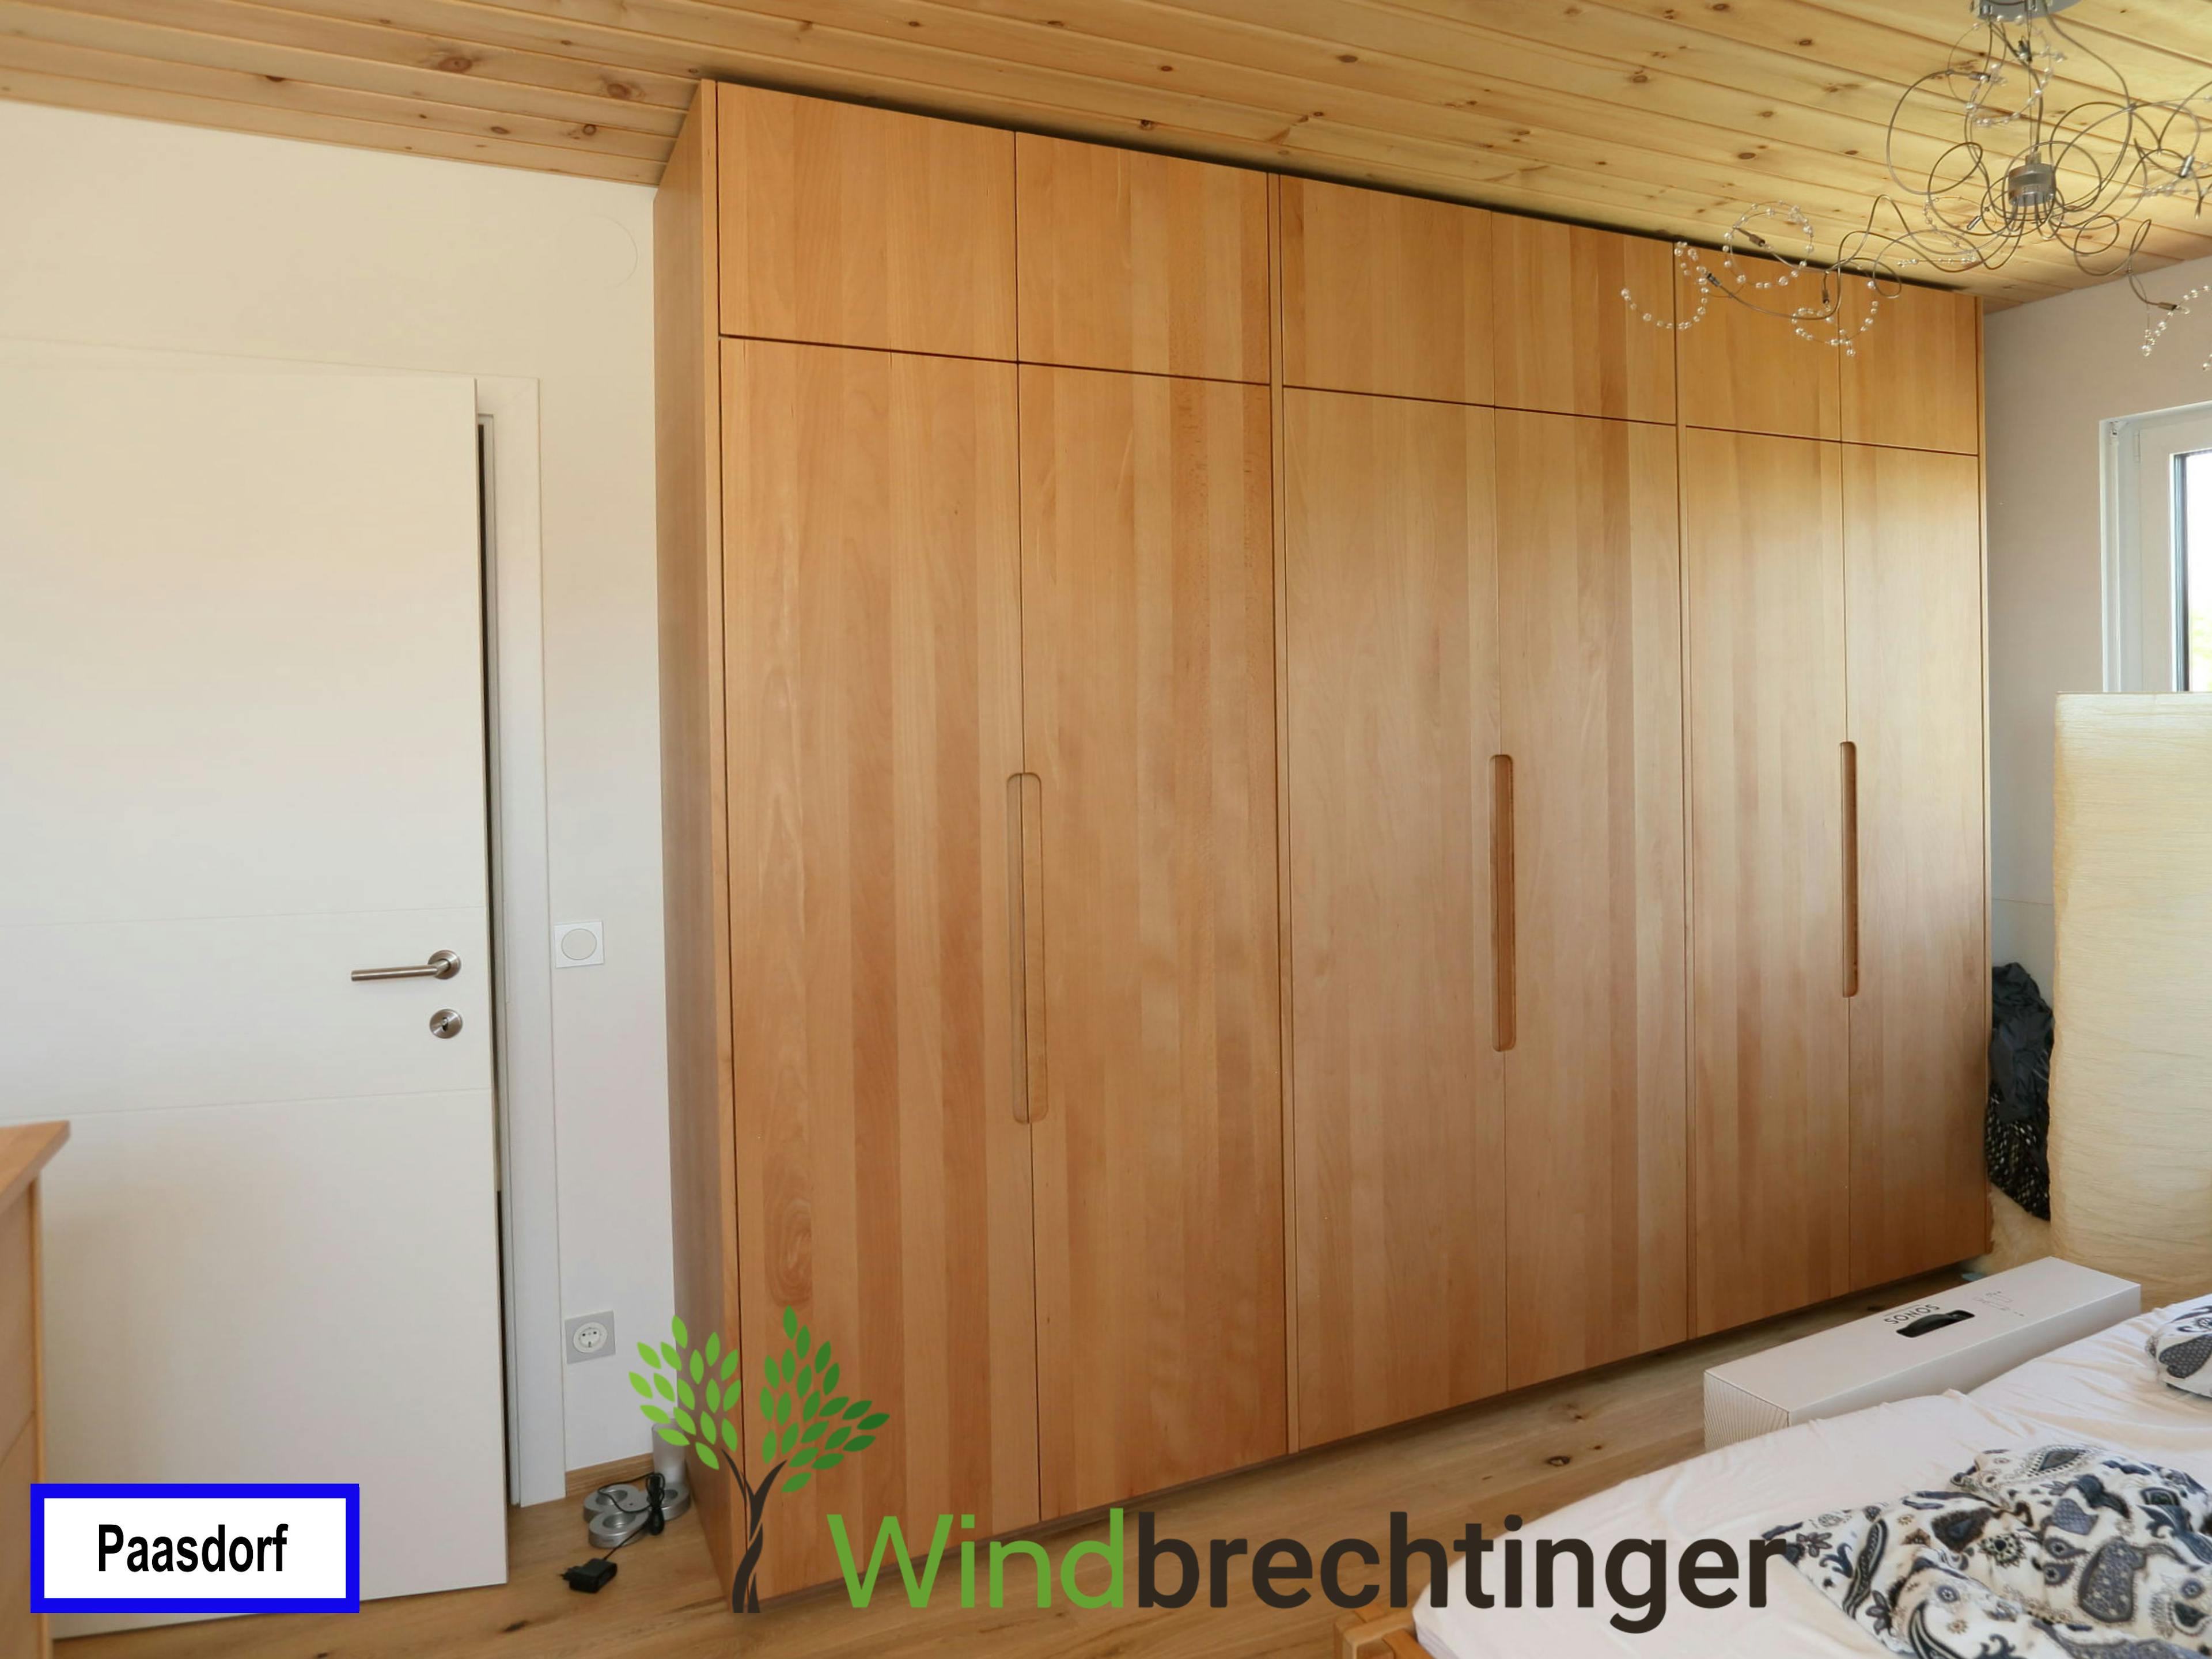 Maßgefertigte Schlafzimmermöbel vom Tischler in Paasdorf – Handwerk von Windbrechtinger